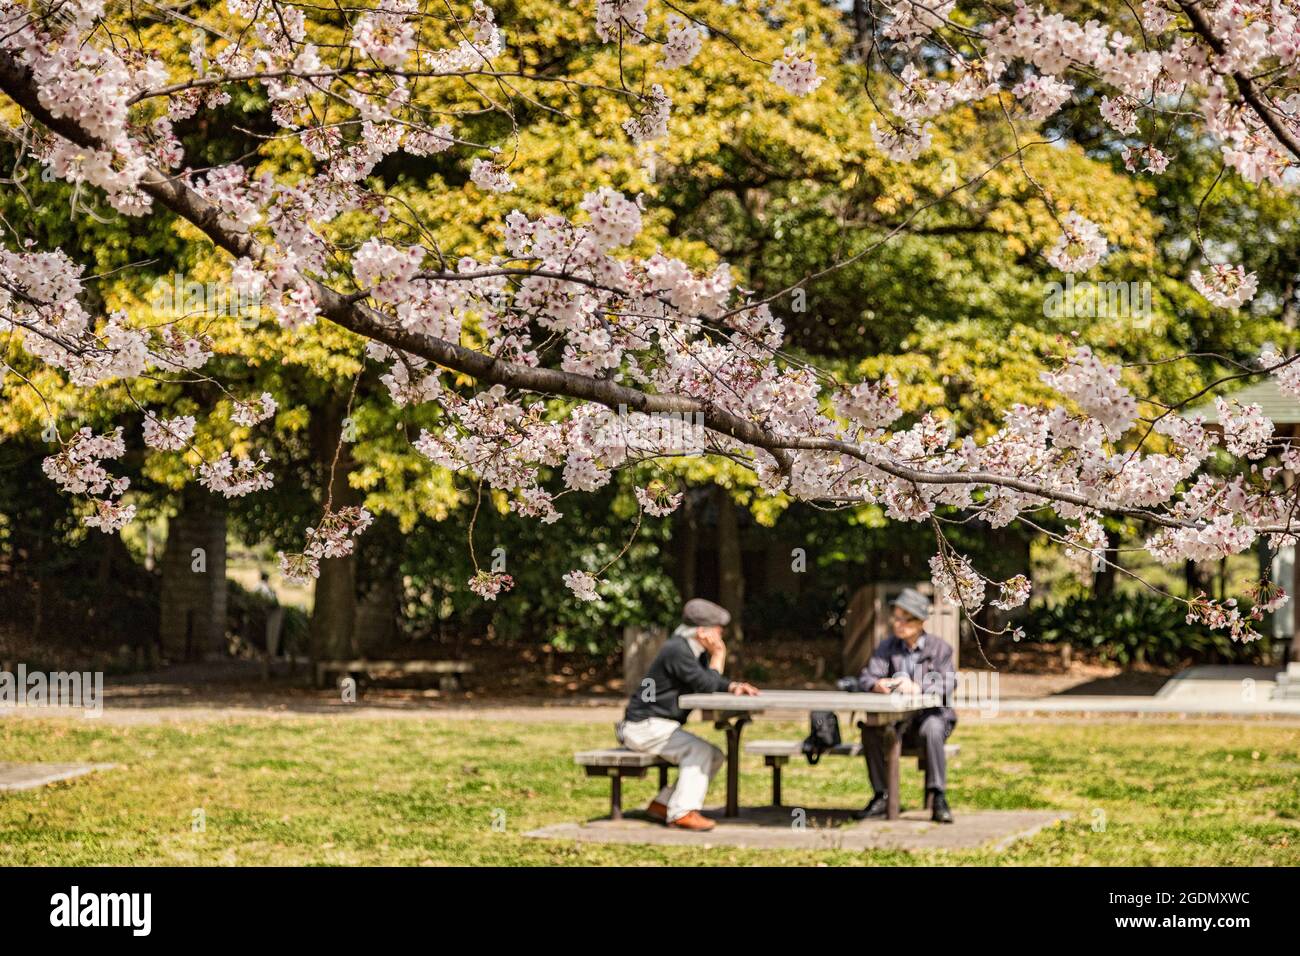 5 aprile 2019: Tokyo, Giappone - fioritura dei ciliegi nel Giardino Kiyosumi, un giardino paesaggistico in stile tradizionale a Tokyo. Mettere a fuoco in primo piano. Foto Stock